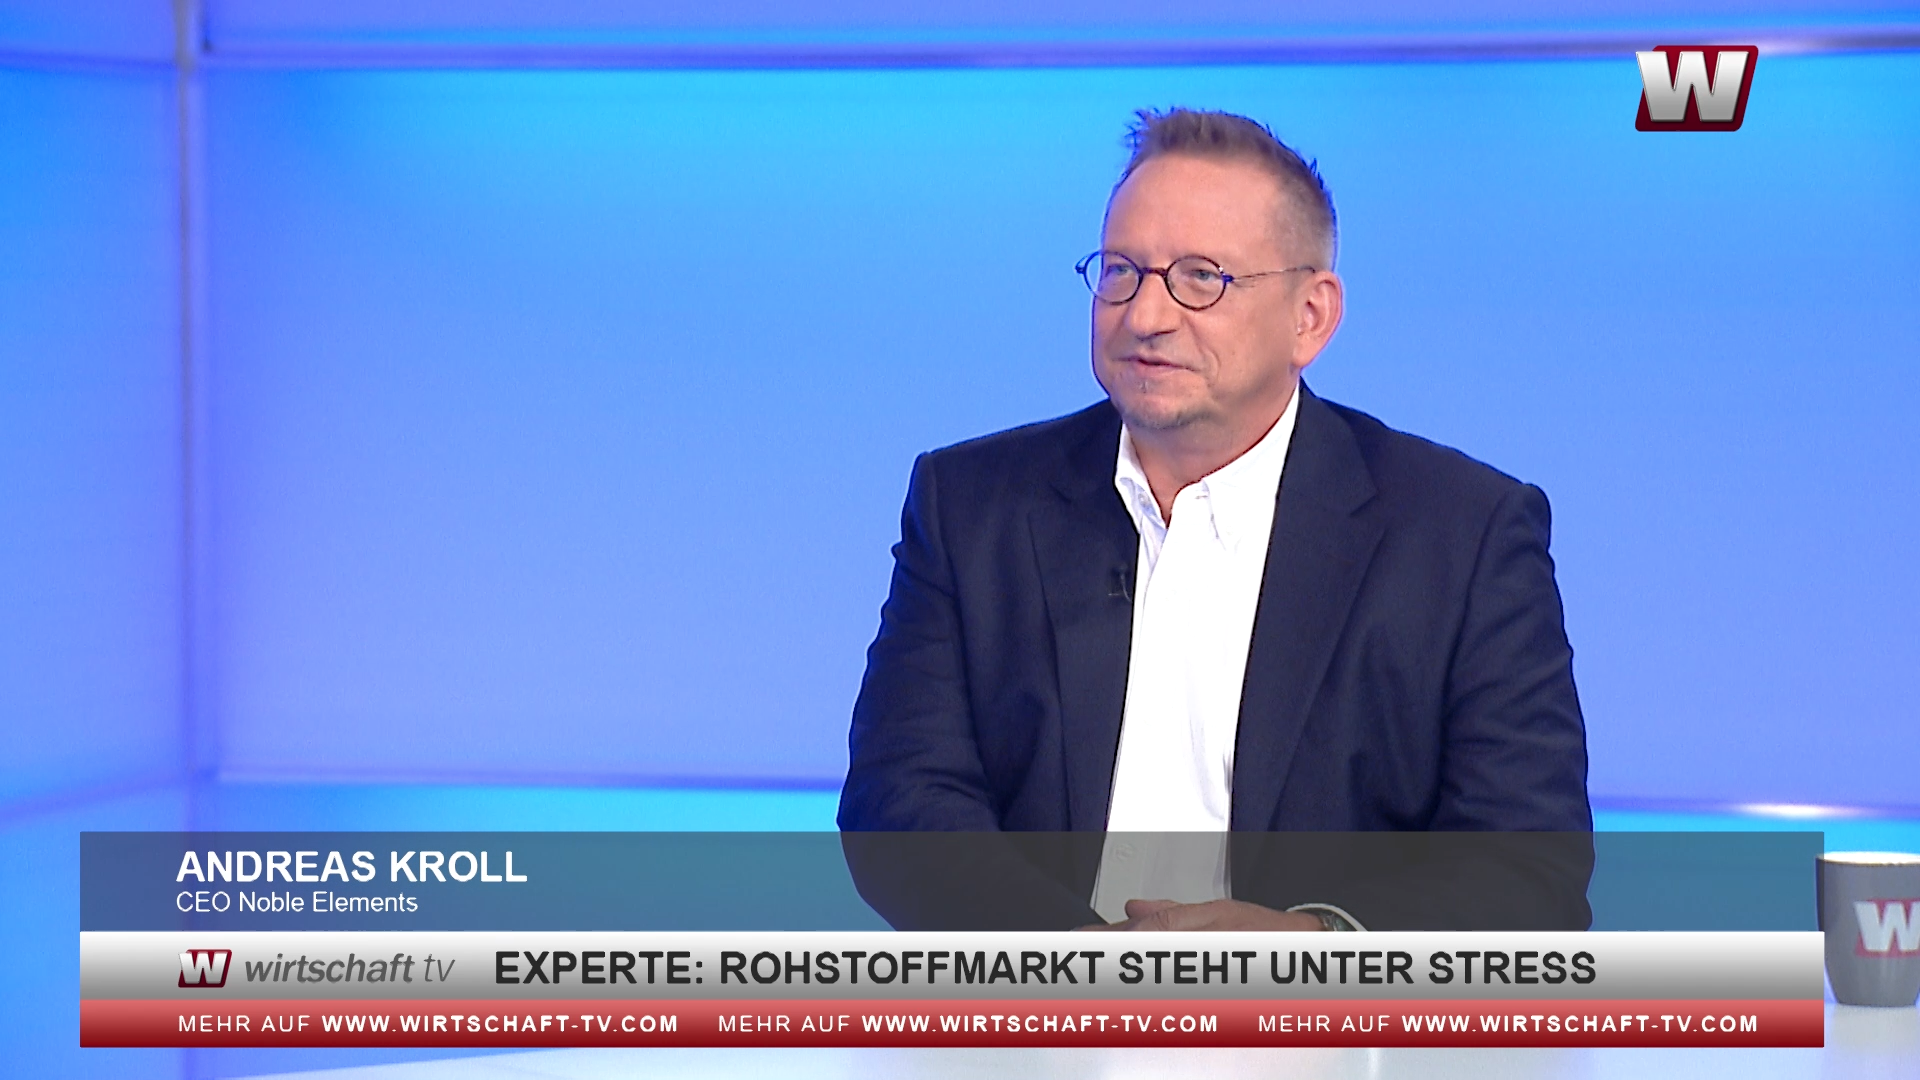 Andreas Kroll WirtschaftTV Interview